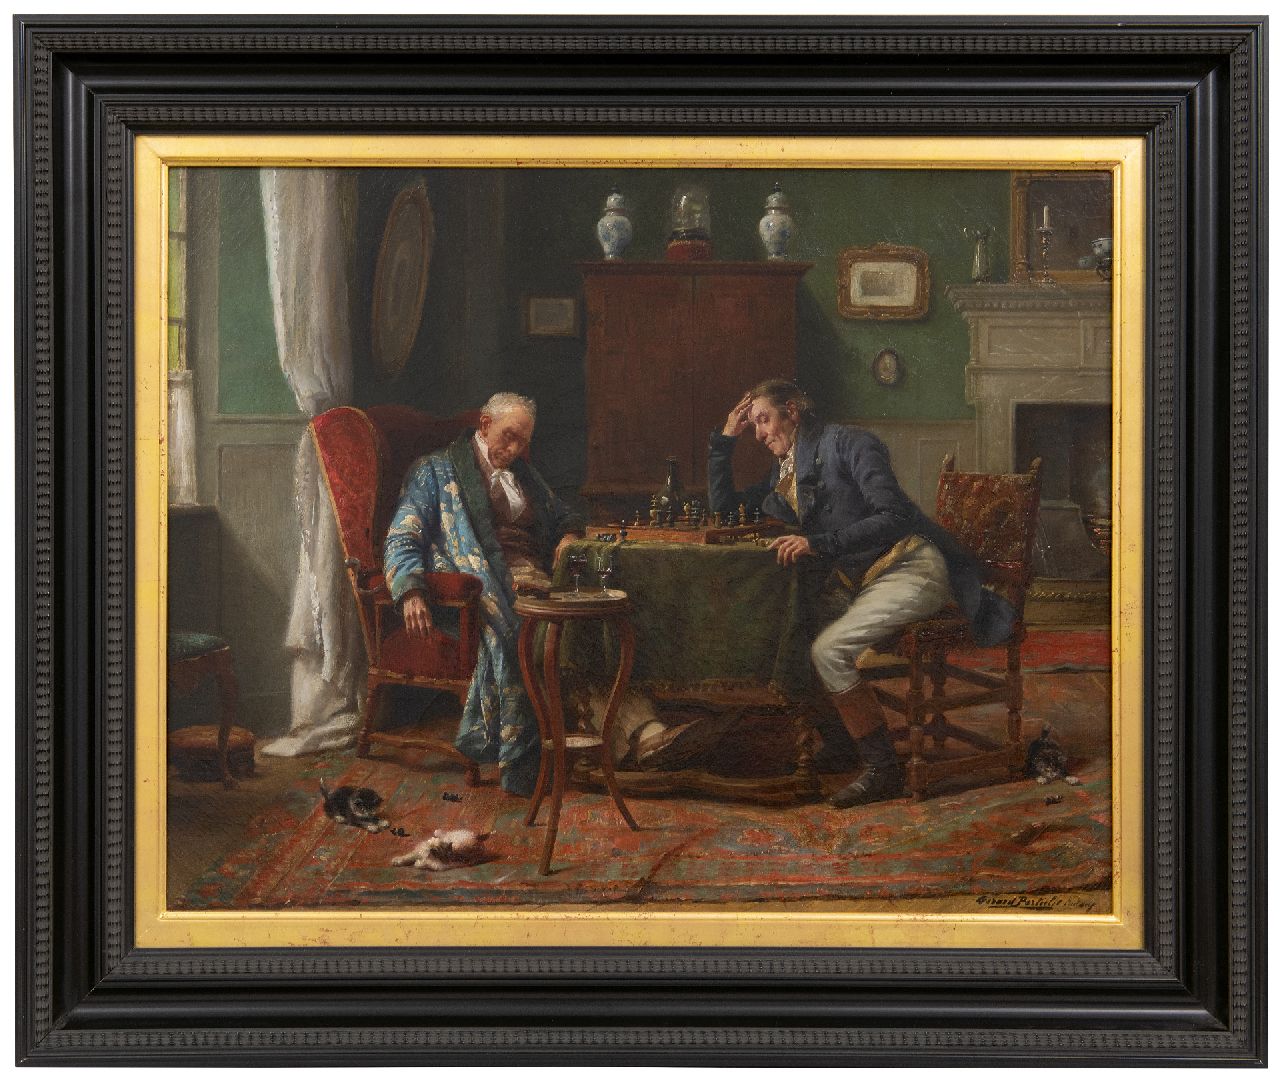 Portielje G.J.  | 'Gerard' Joseph Portielje | Schilderijen te koop aangeboden | Bij het schaakspel is het wakker blijven, olieverf op doek 46,7 x 58,5 cm, gesigneerd rechtsonder